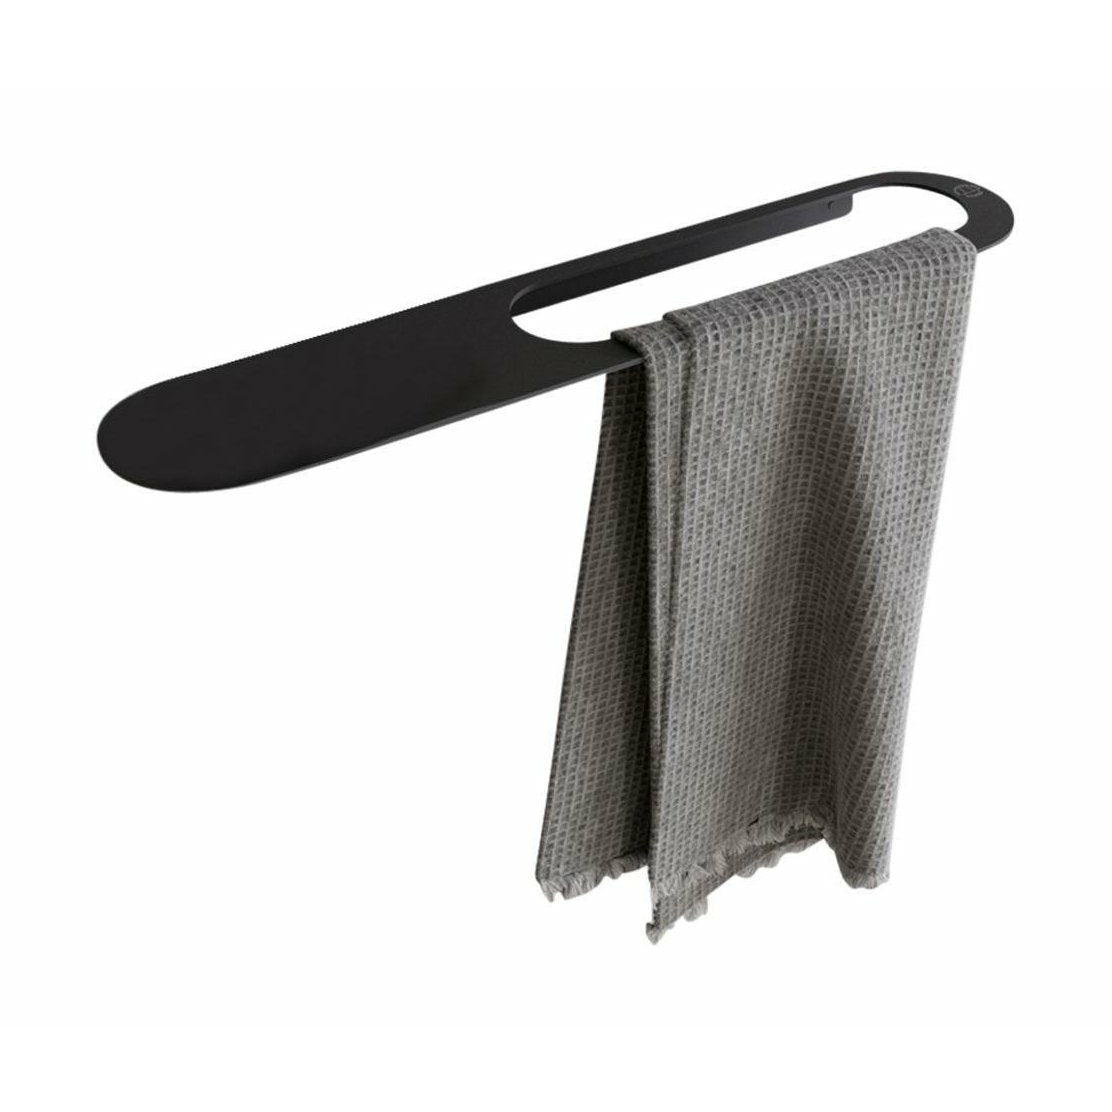 哥本哈根浴室CB 100毛巾架，带架子，垫子黑色